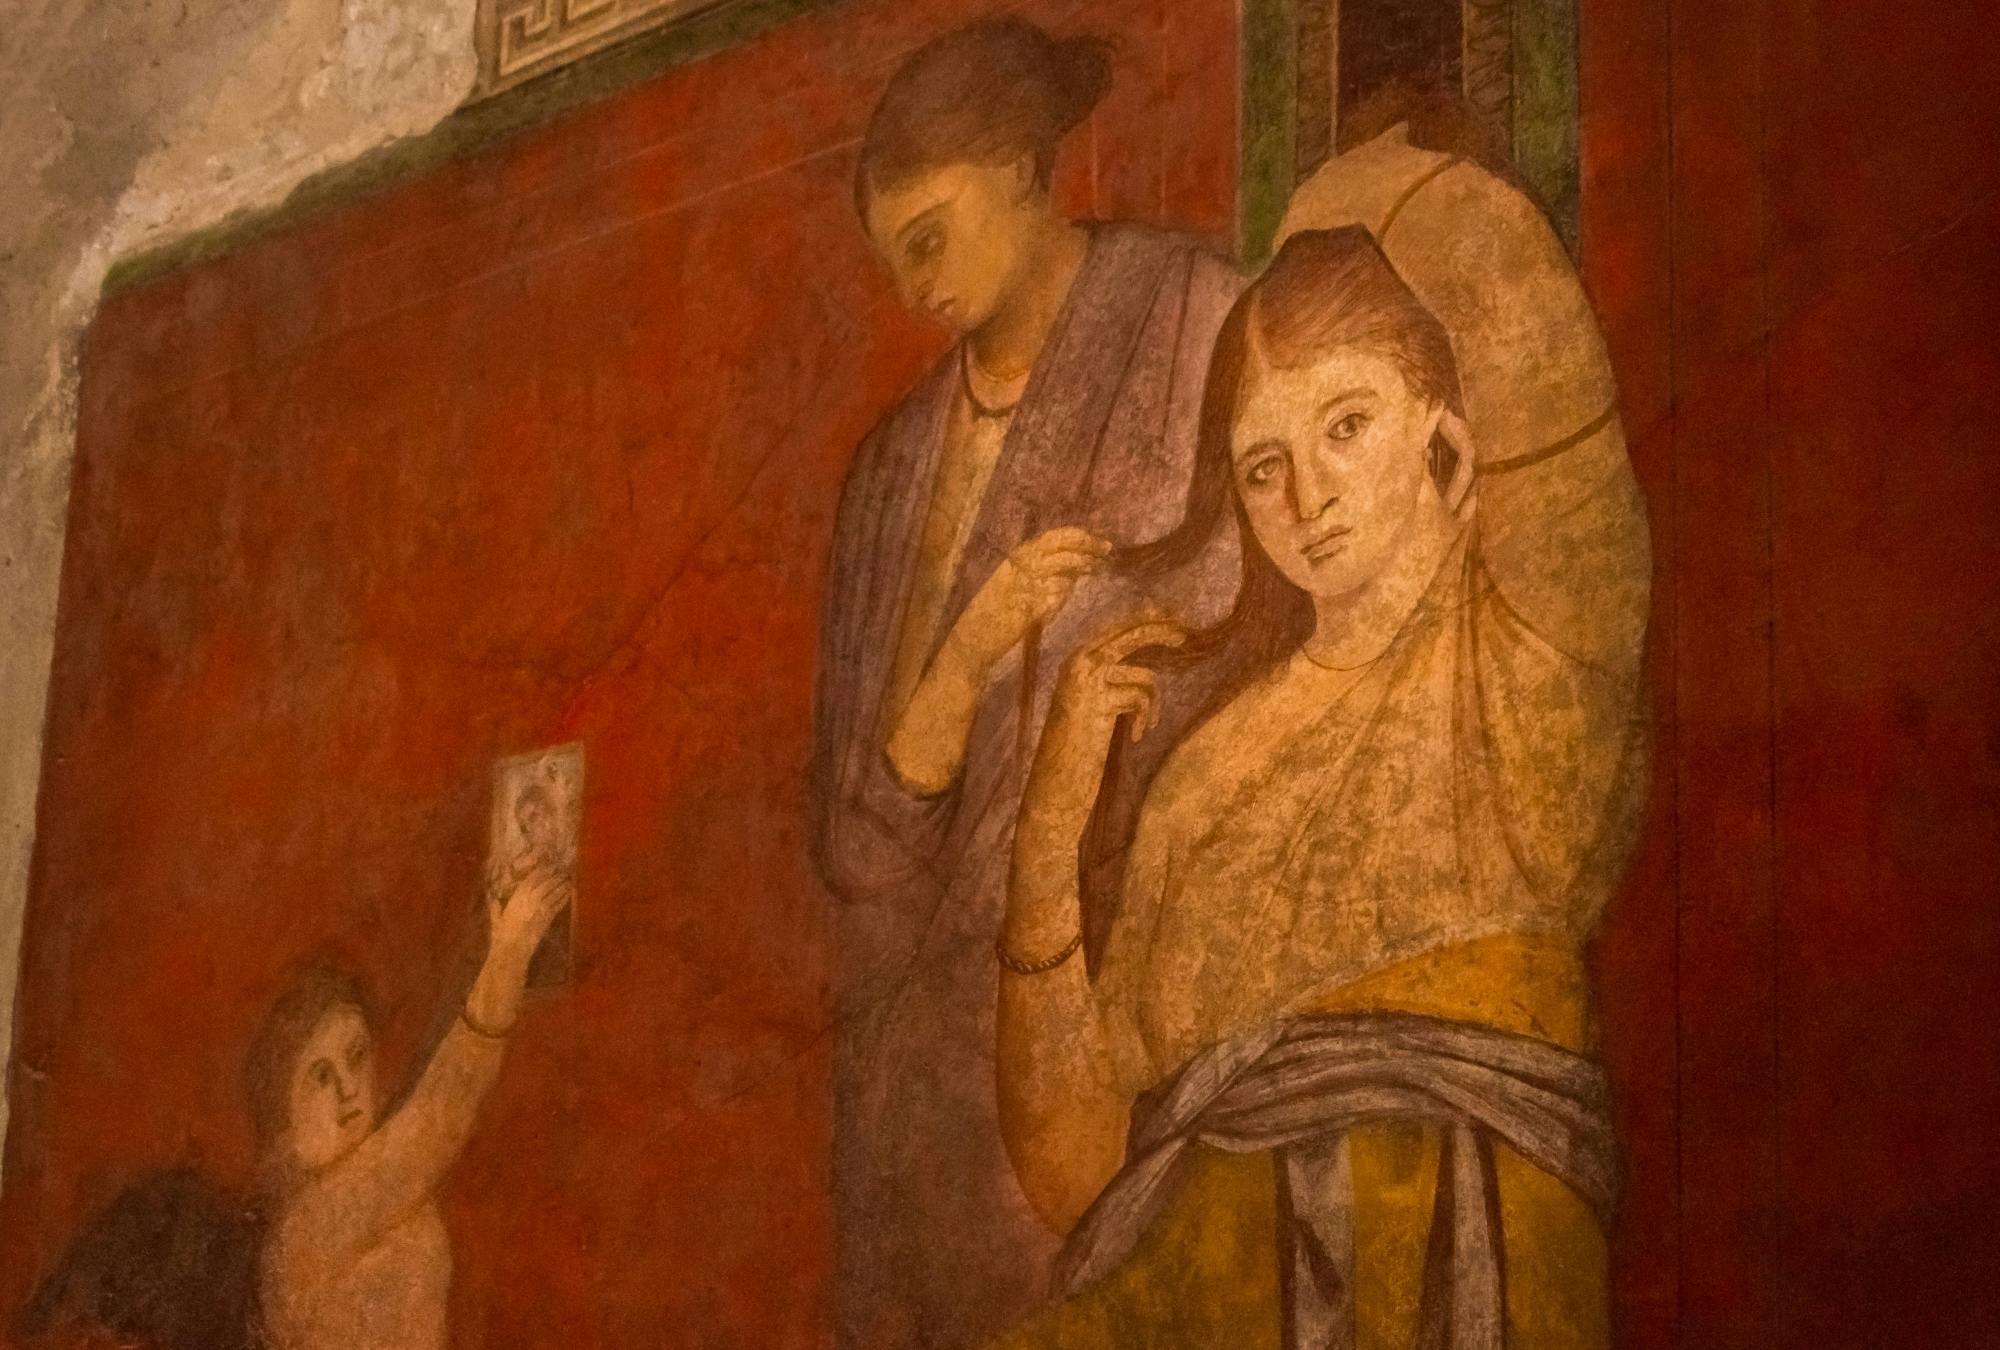 Exklusive, von einem Archäologen geführte Tour durch Pompejis Villa der Geheimnisse